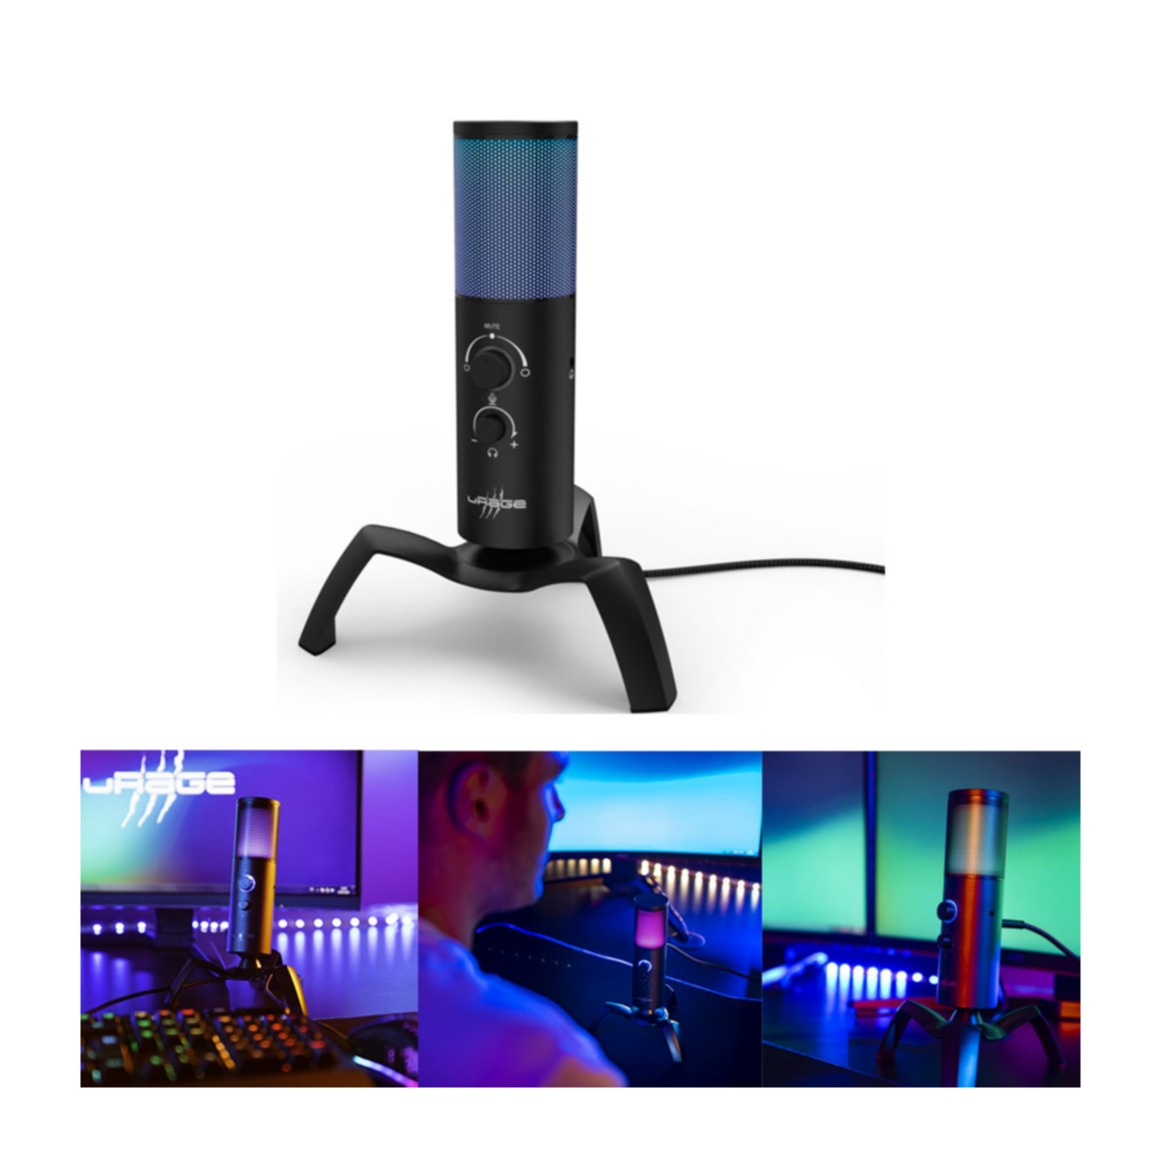 Image of Urage - Stream 750 HD Illuminated Studio Streaming Cardioid USB Mikrofon + Dreibein Stativ Standfuss und RGB Beleuchtung (00186059) - Schwarz bei Apfelkiste.ch